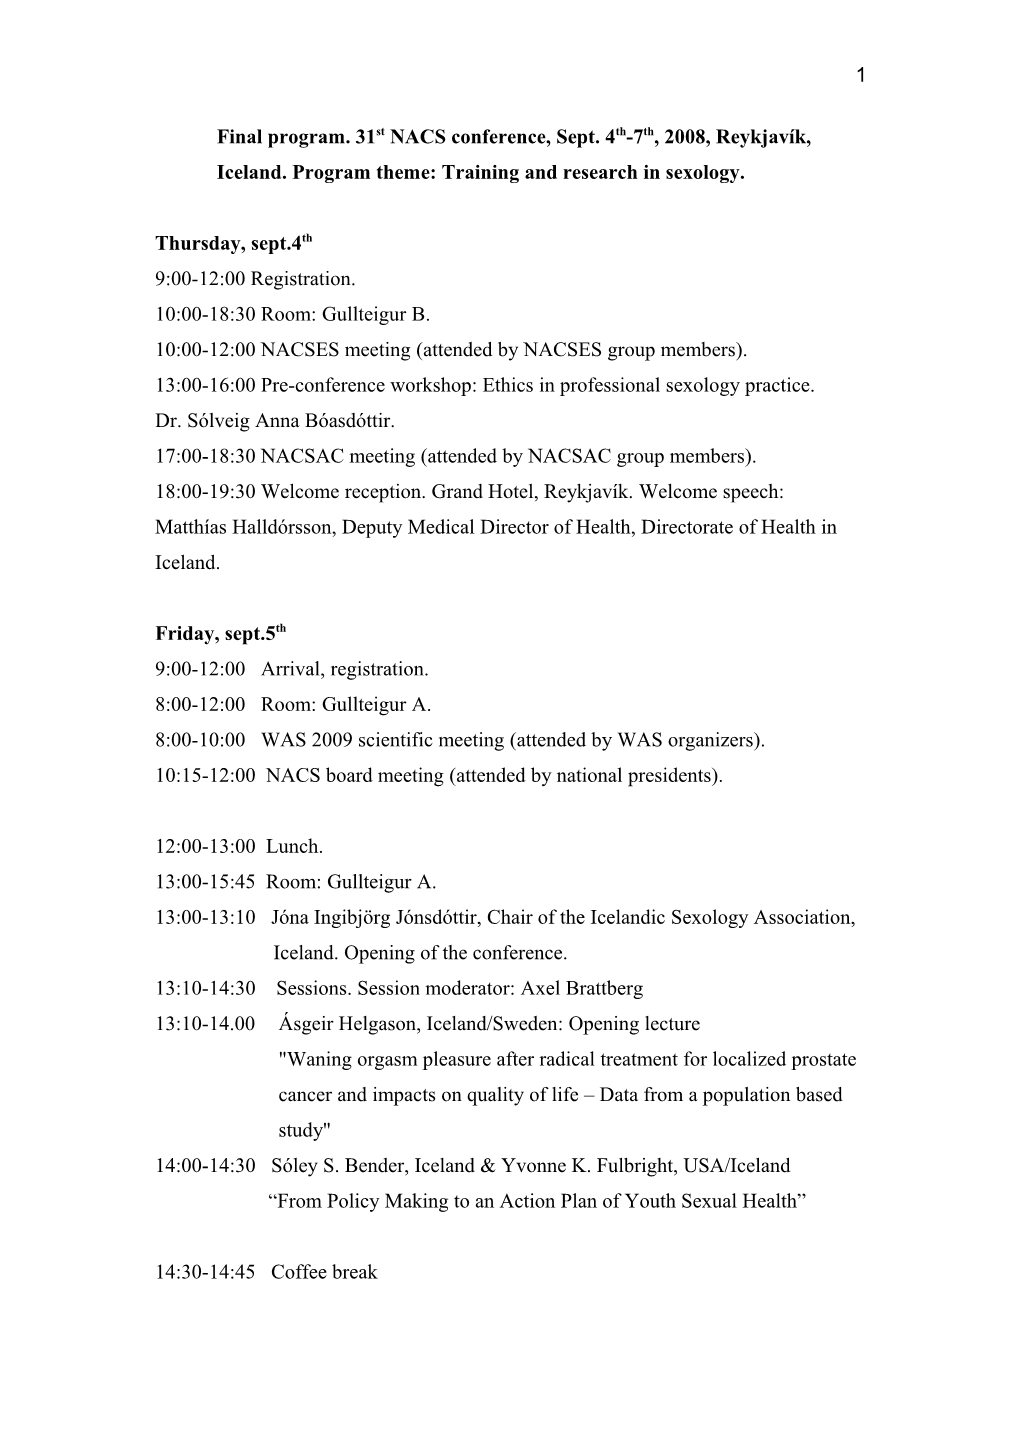 Final Program. 31St NACS Conference, Sept. 4Th-7Th, 2008, Reykjavík, Iceland. Program